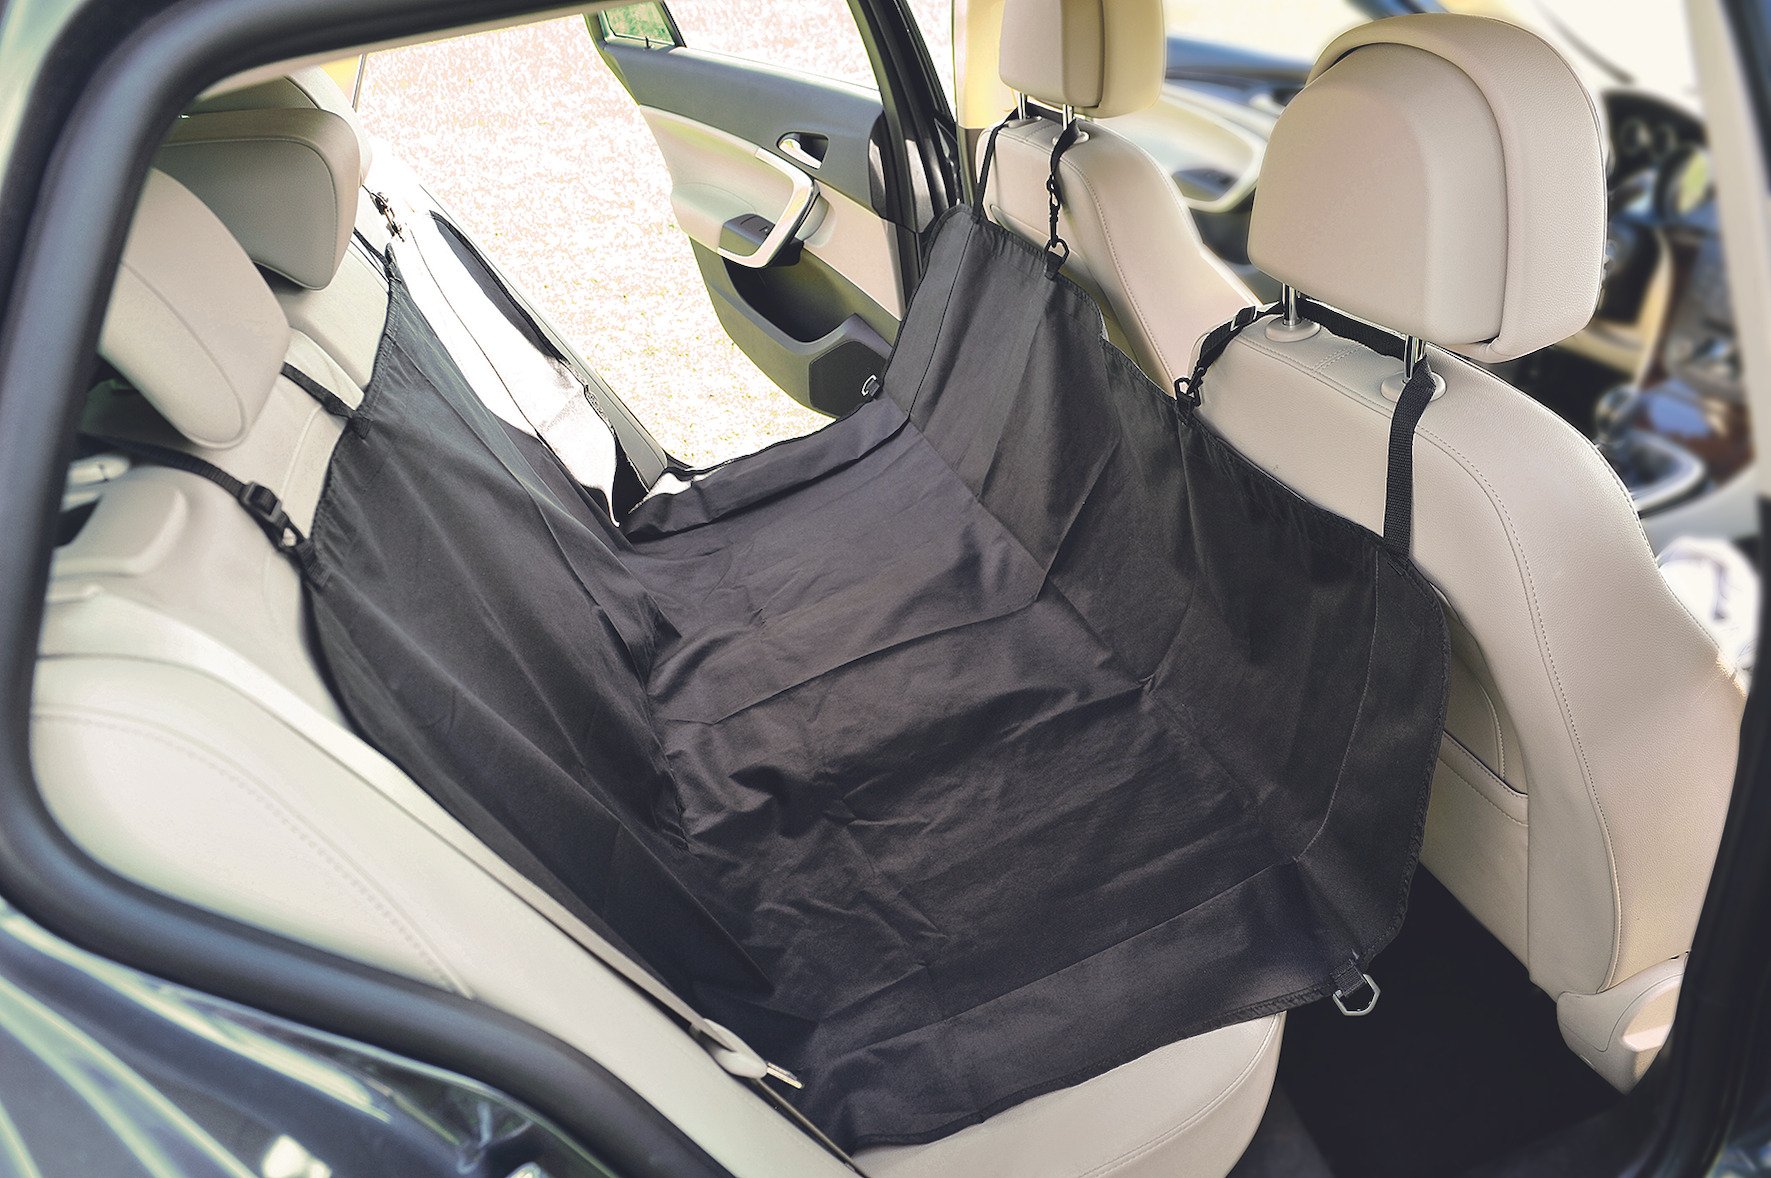 Manta protetora auto-ajustável para assento de automóvel